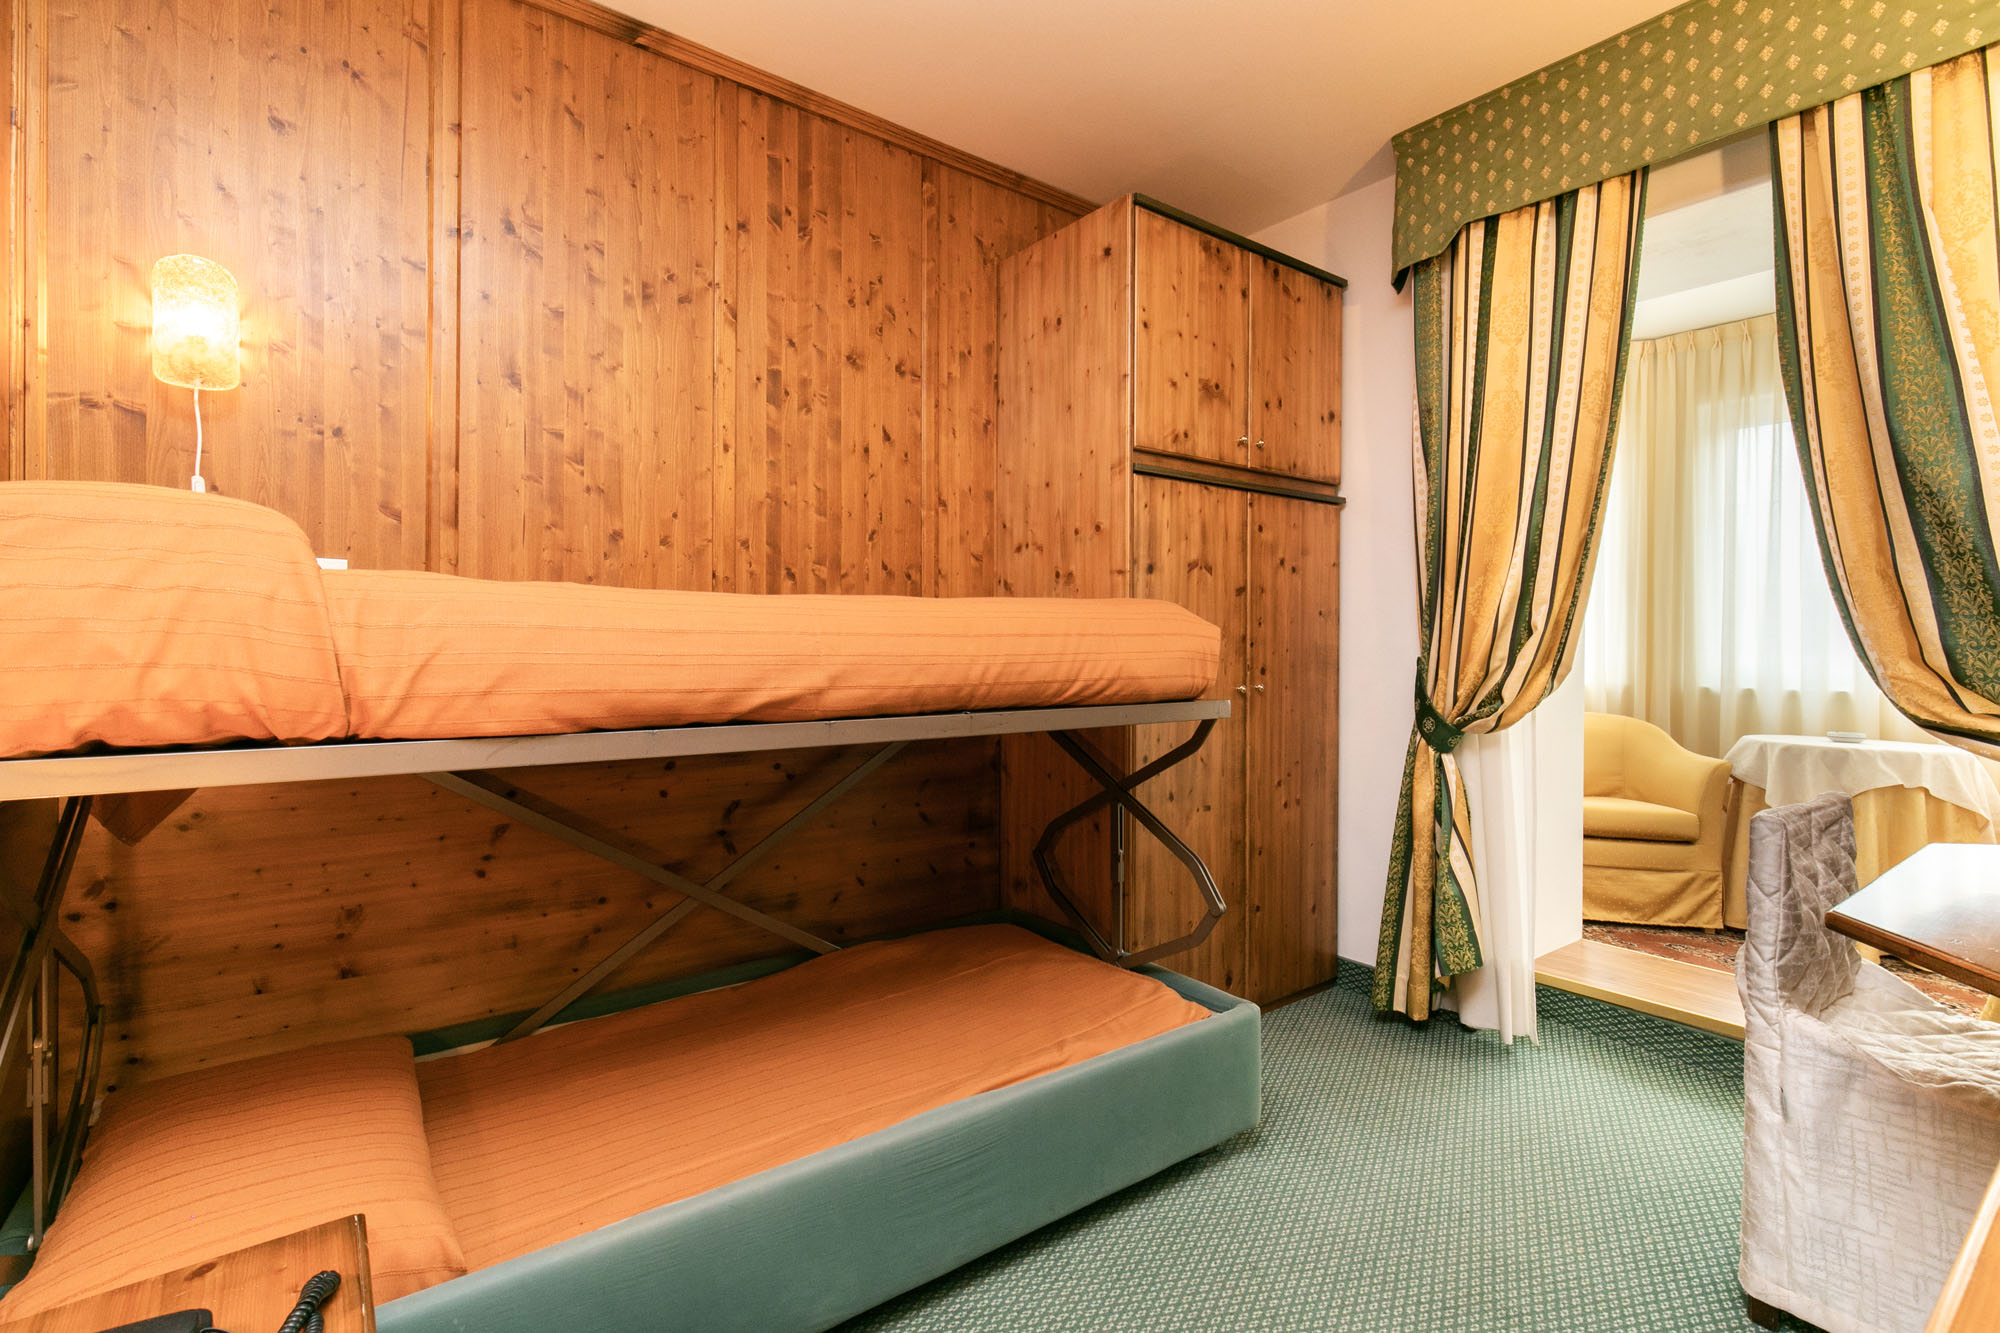 Camera Family Room per 3 persone di Grand Hotel des Alpes in centro a San Martino di Castrozza